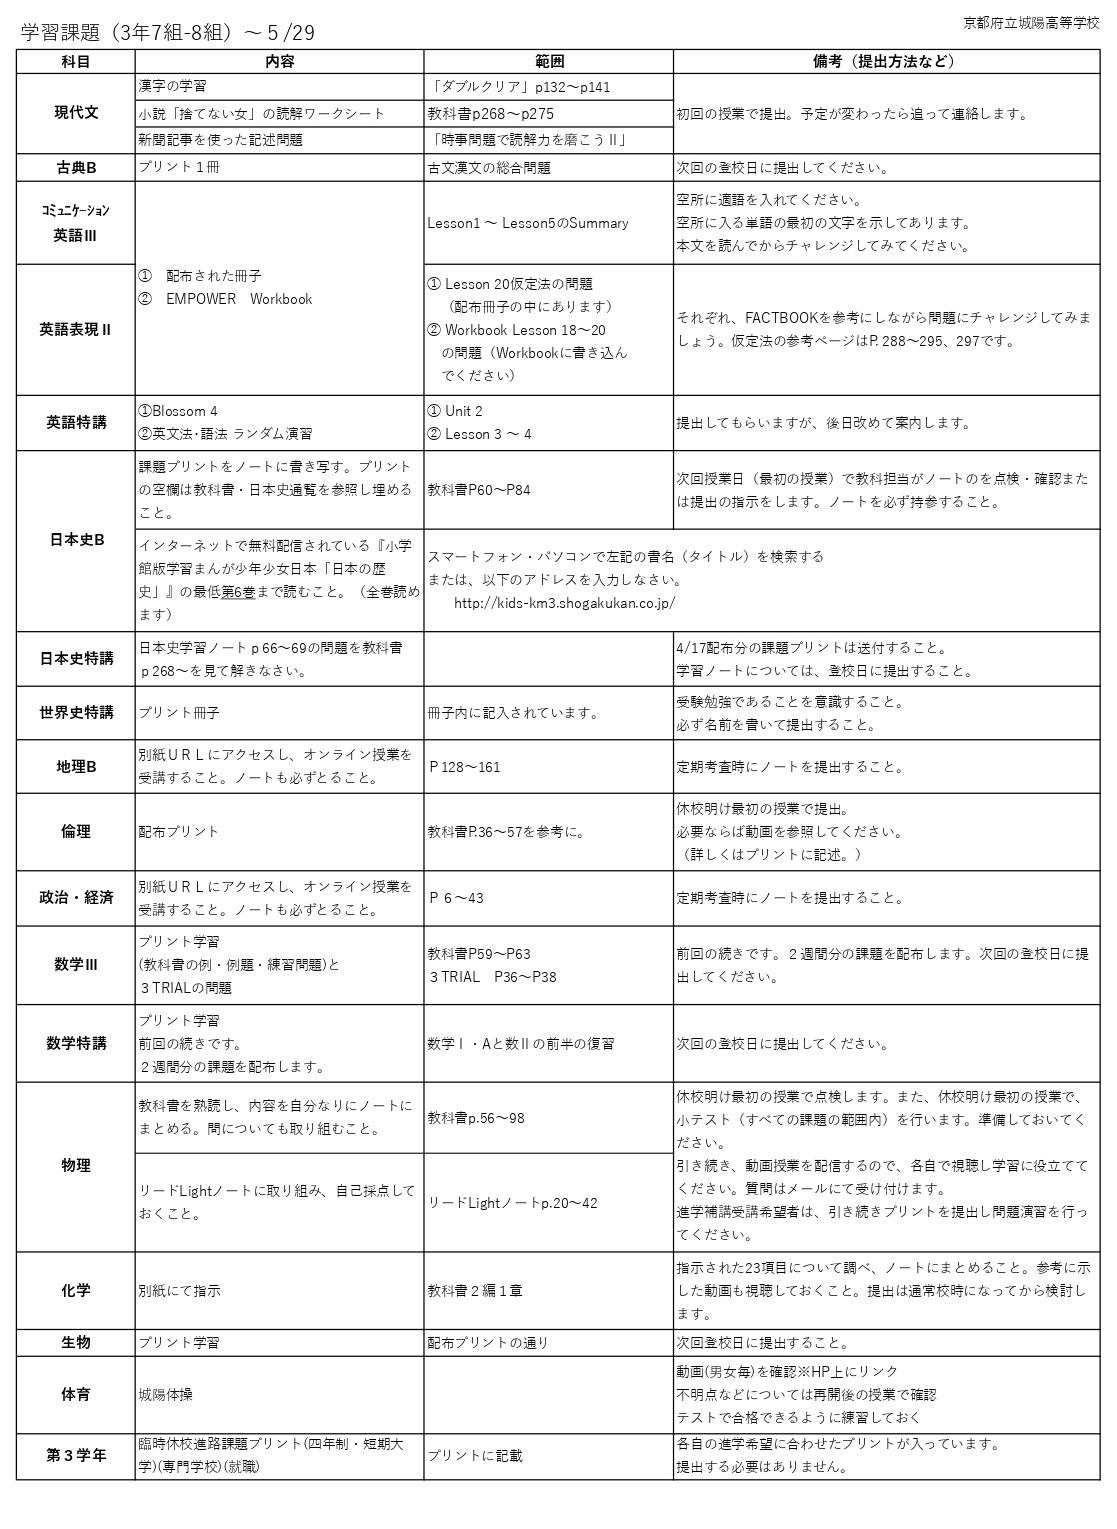 http://www.kyoto-be.ne.jp/jyouyou-hs/mt/school_life/images/%E5%AD%A6%E7%BF%92%E8%AA%B2%E9%A1%8C_3%E5%B9%B4PRG5.8_page-0001.jpg